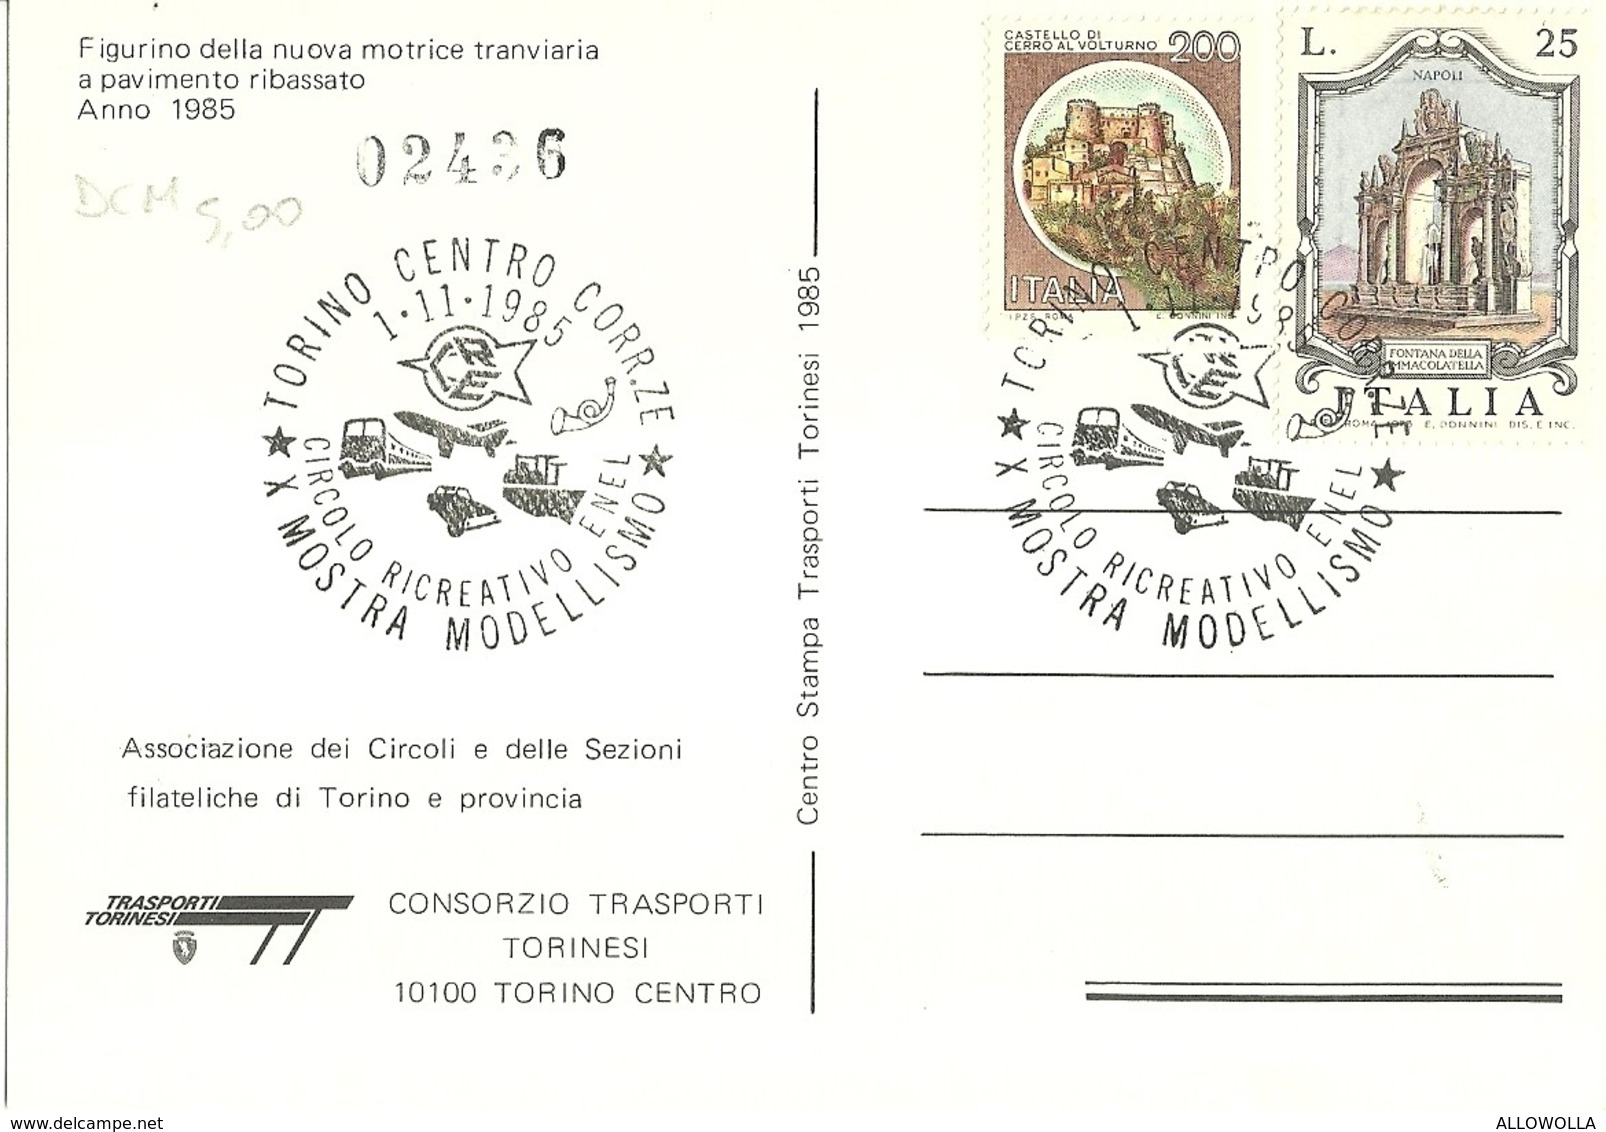 669 "FIGURINO DELLA NUOVA MOTRICE TRANVIARIA A PAVIMENTO RIBASSATO 1985" CART. NON SPED. - Transportes